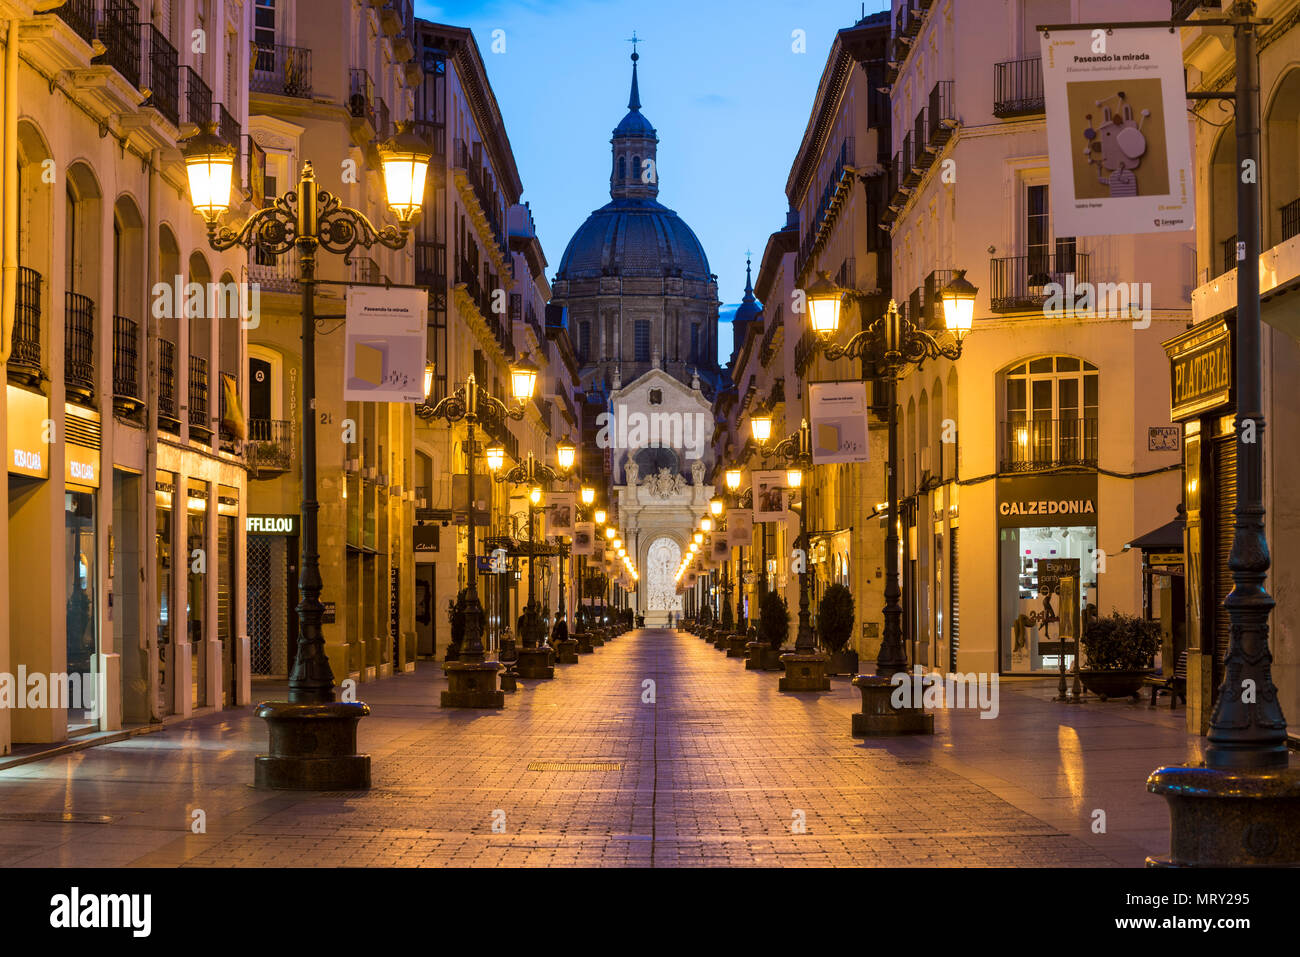 Calle Alfonso et la cathédrale de Notre-Dame du Pilier au crépuscule. Zaragoza, Aragon, Espagne, Europe Banque D'Images